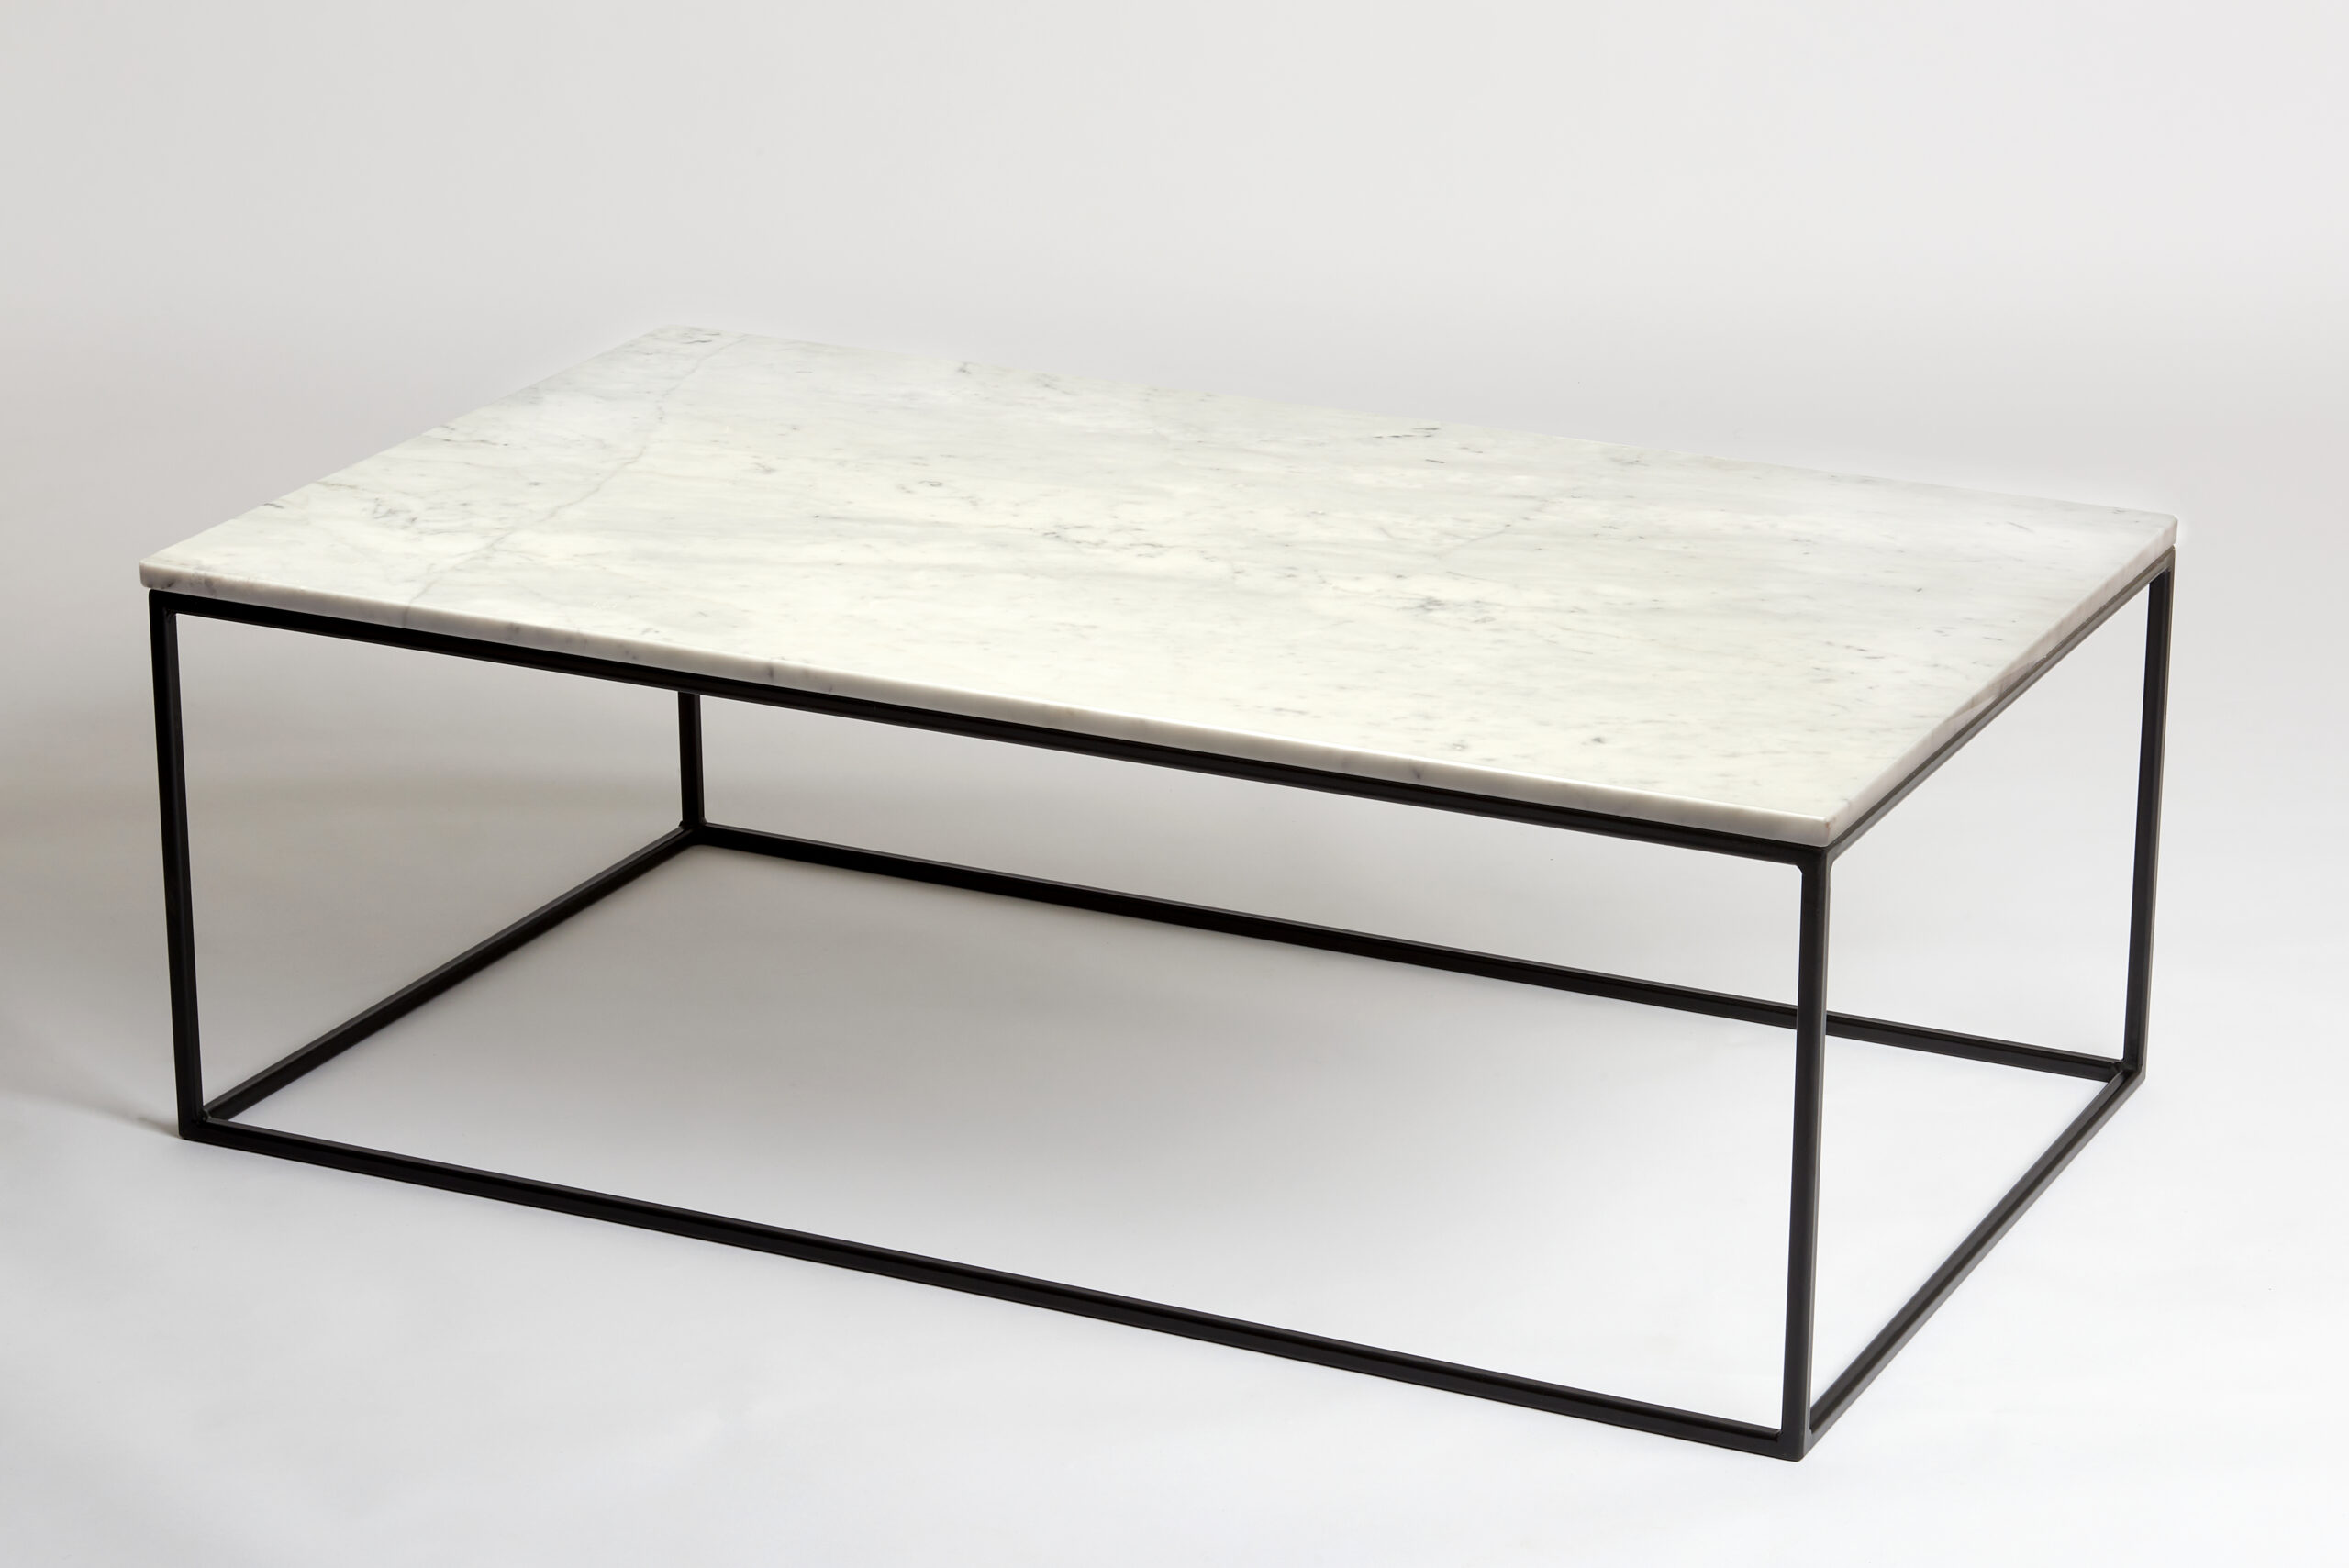 120 bij 70 cm - Witte marmeren salontafel - bovenzijaanzicht- VanMarmer